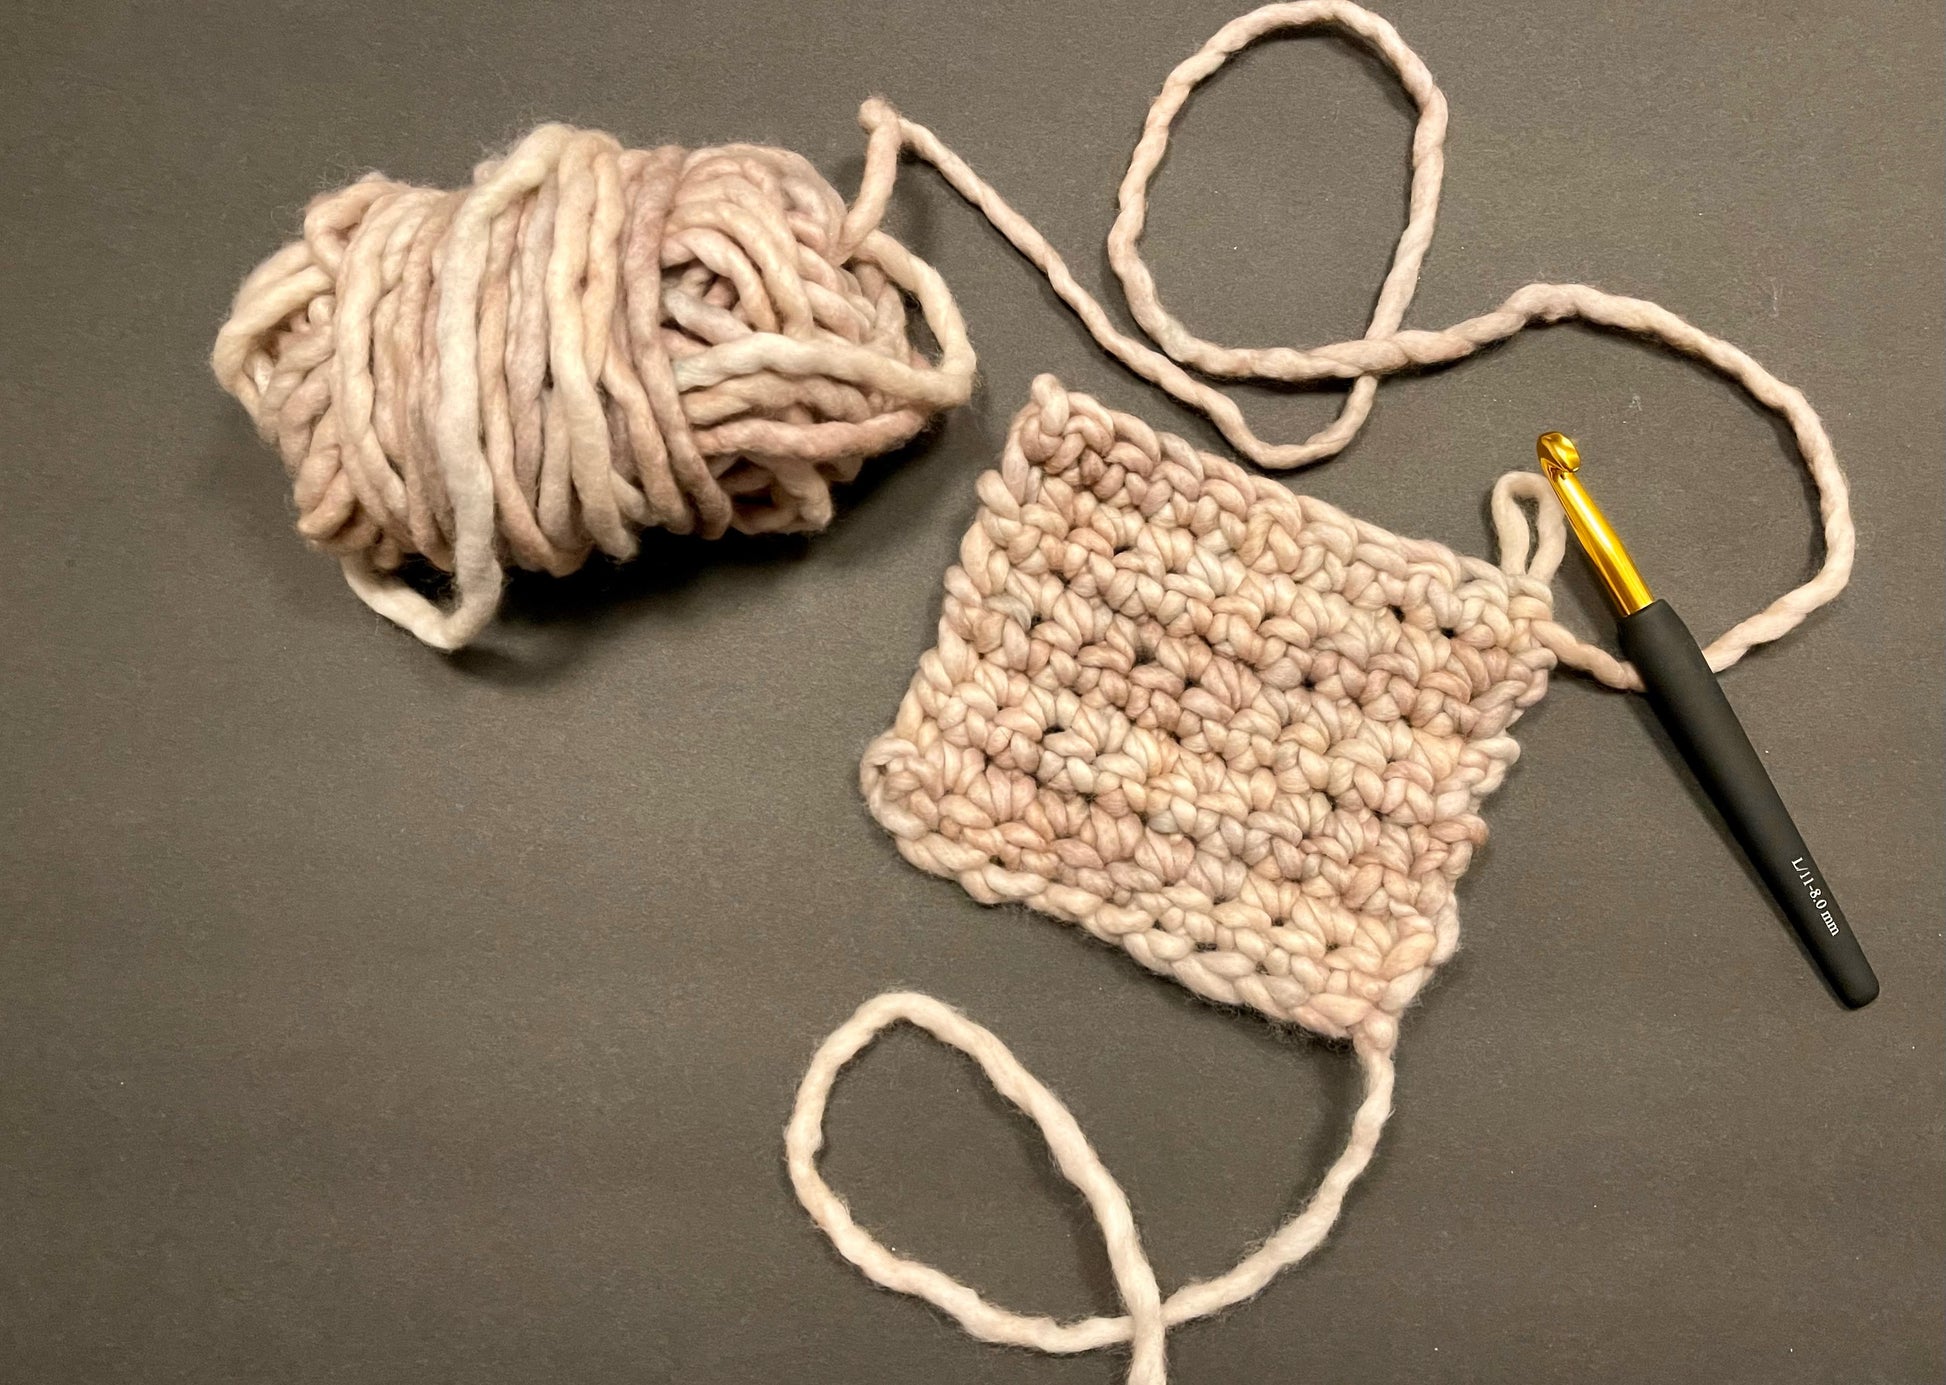 KIDS CLASS - Learn to Crochet